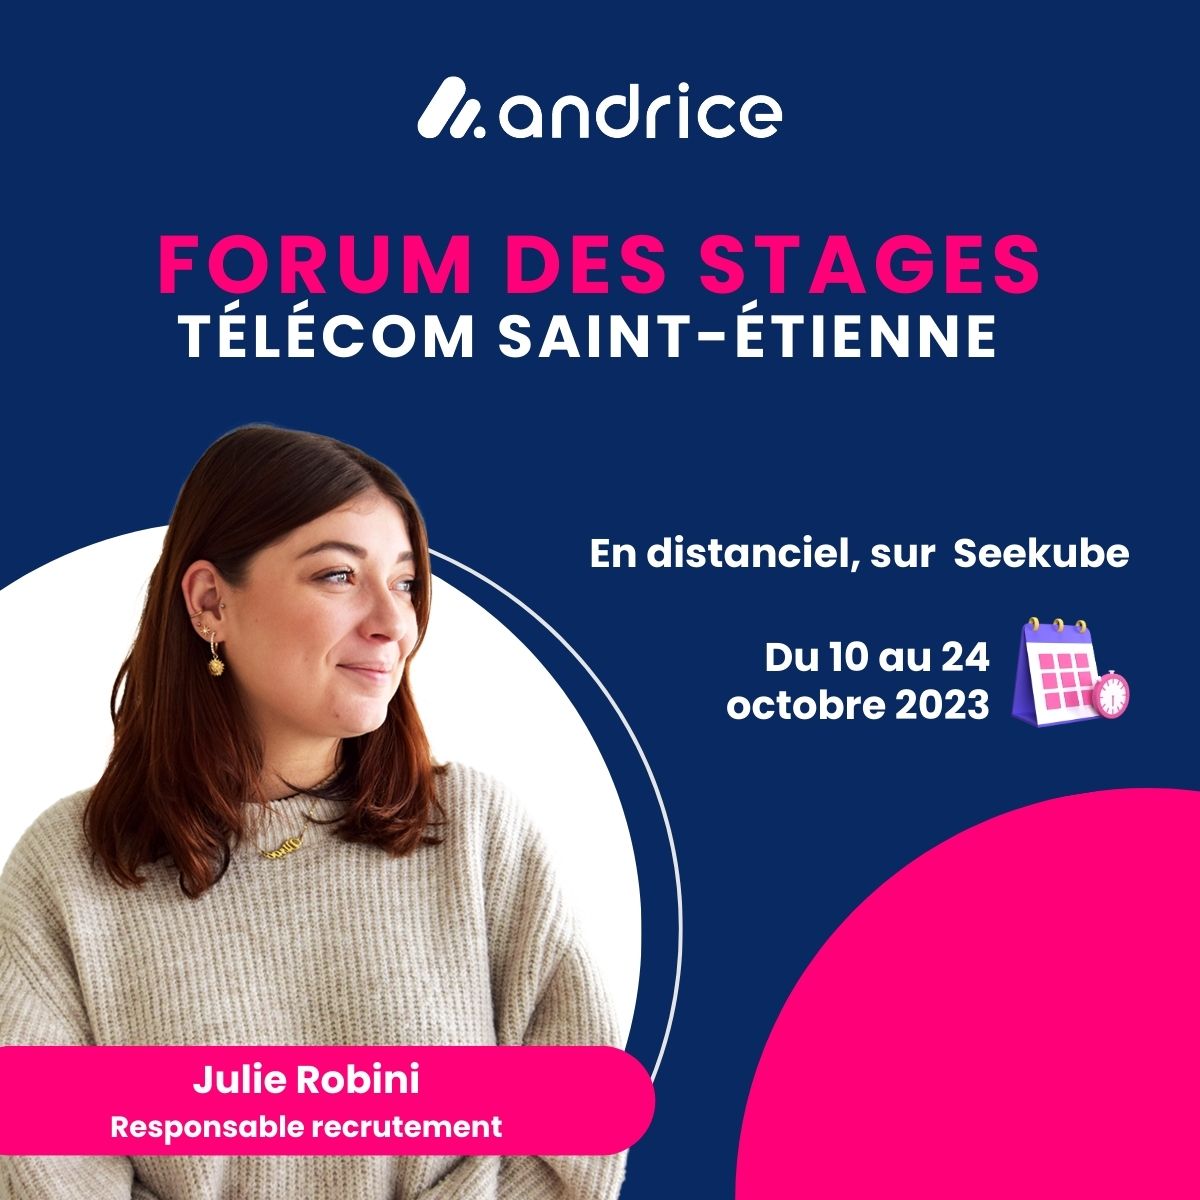 Forum des stages Télécom Saint-Etienne. rencontrez Julie, Responsable recrutement